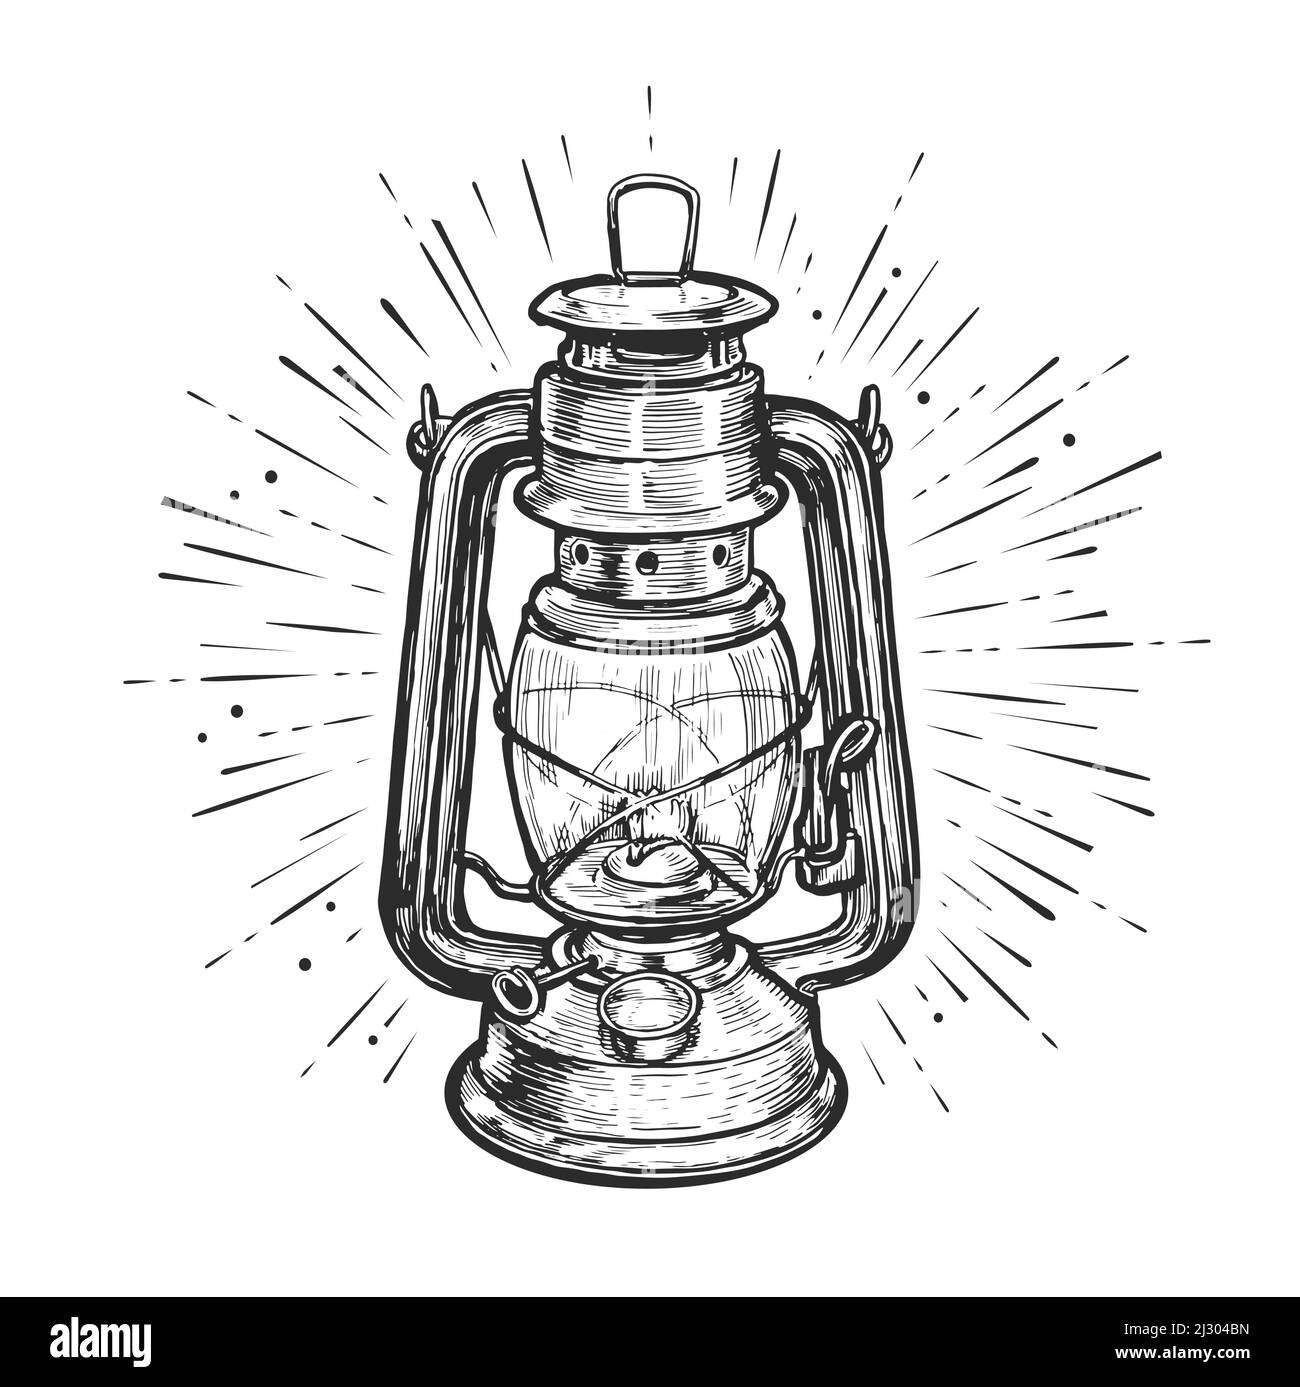 Öllaterne oder Petroleumlampe mit Lichtstrahlen. Handgezeichnete Skizze Vintage Vektor Illustration Stock Vektor